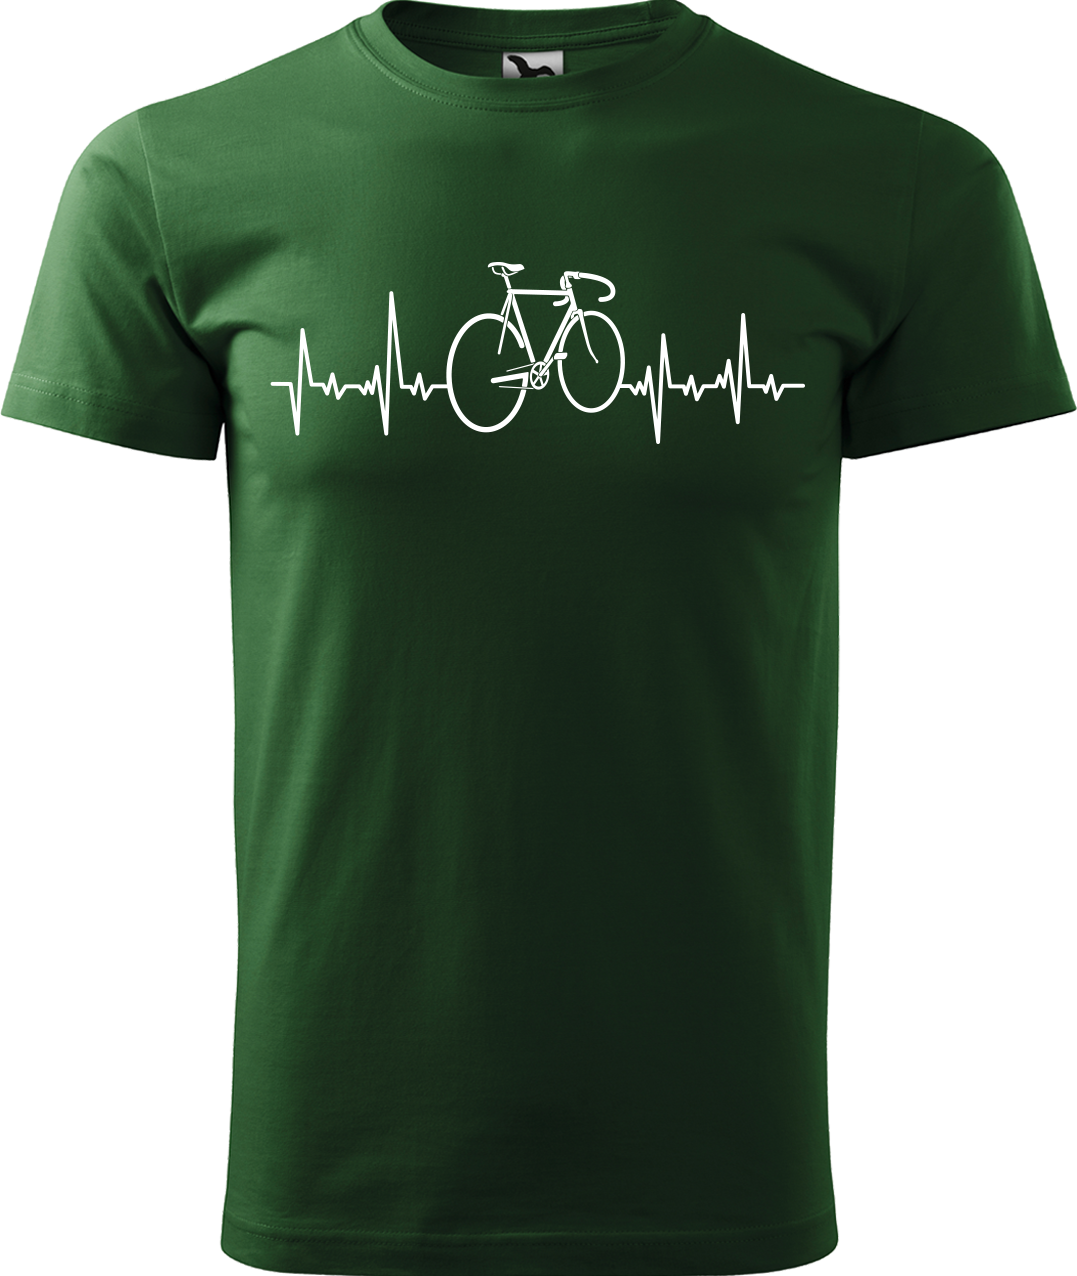 Pánské tričko s kolem - Cyklistův kardiogram Velikost: XL, Barva: Lahvově zelená (06)